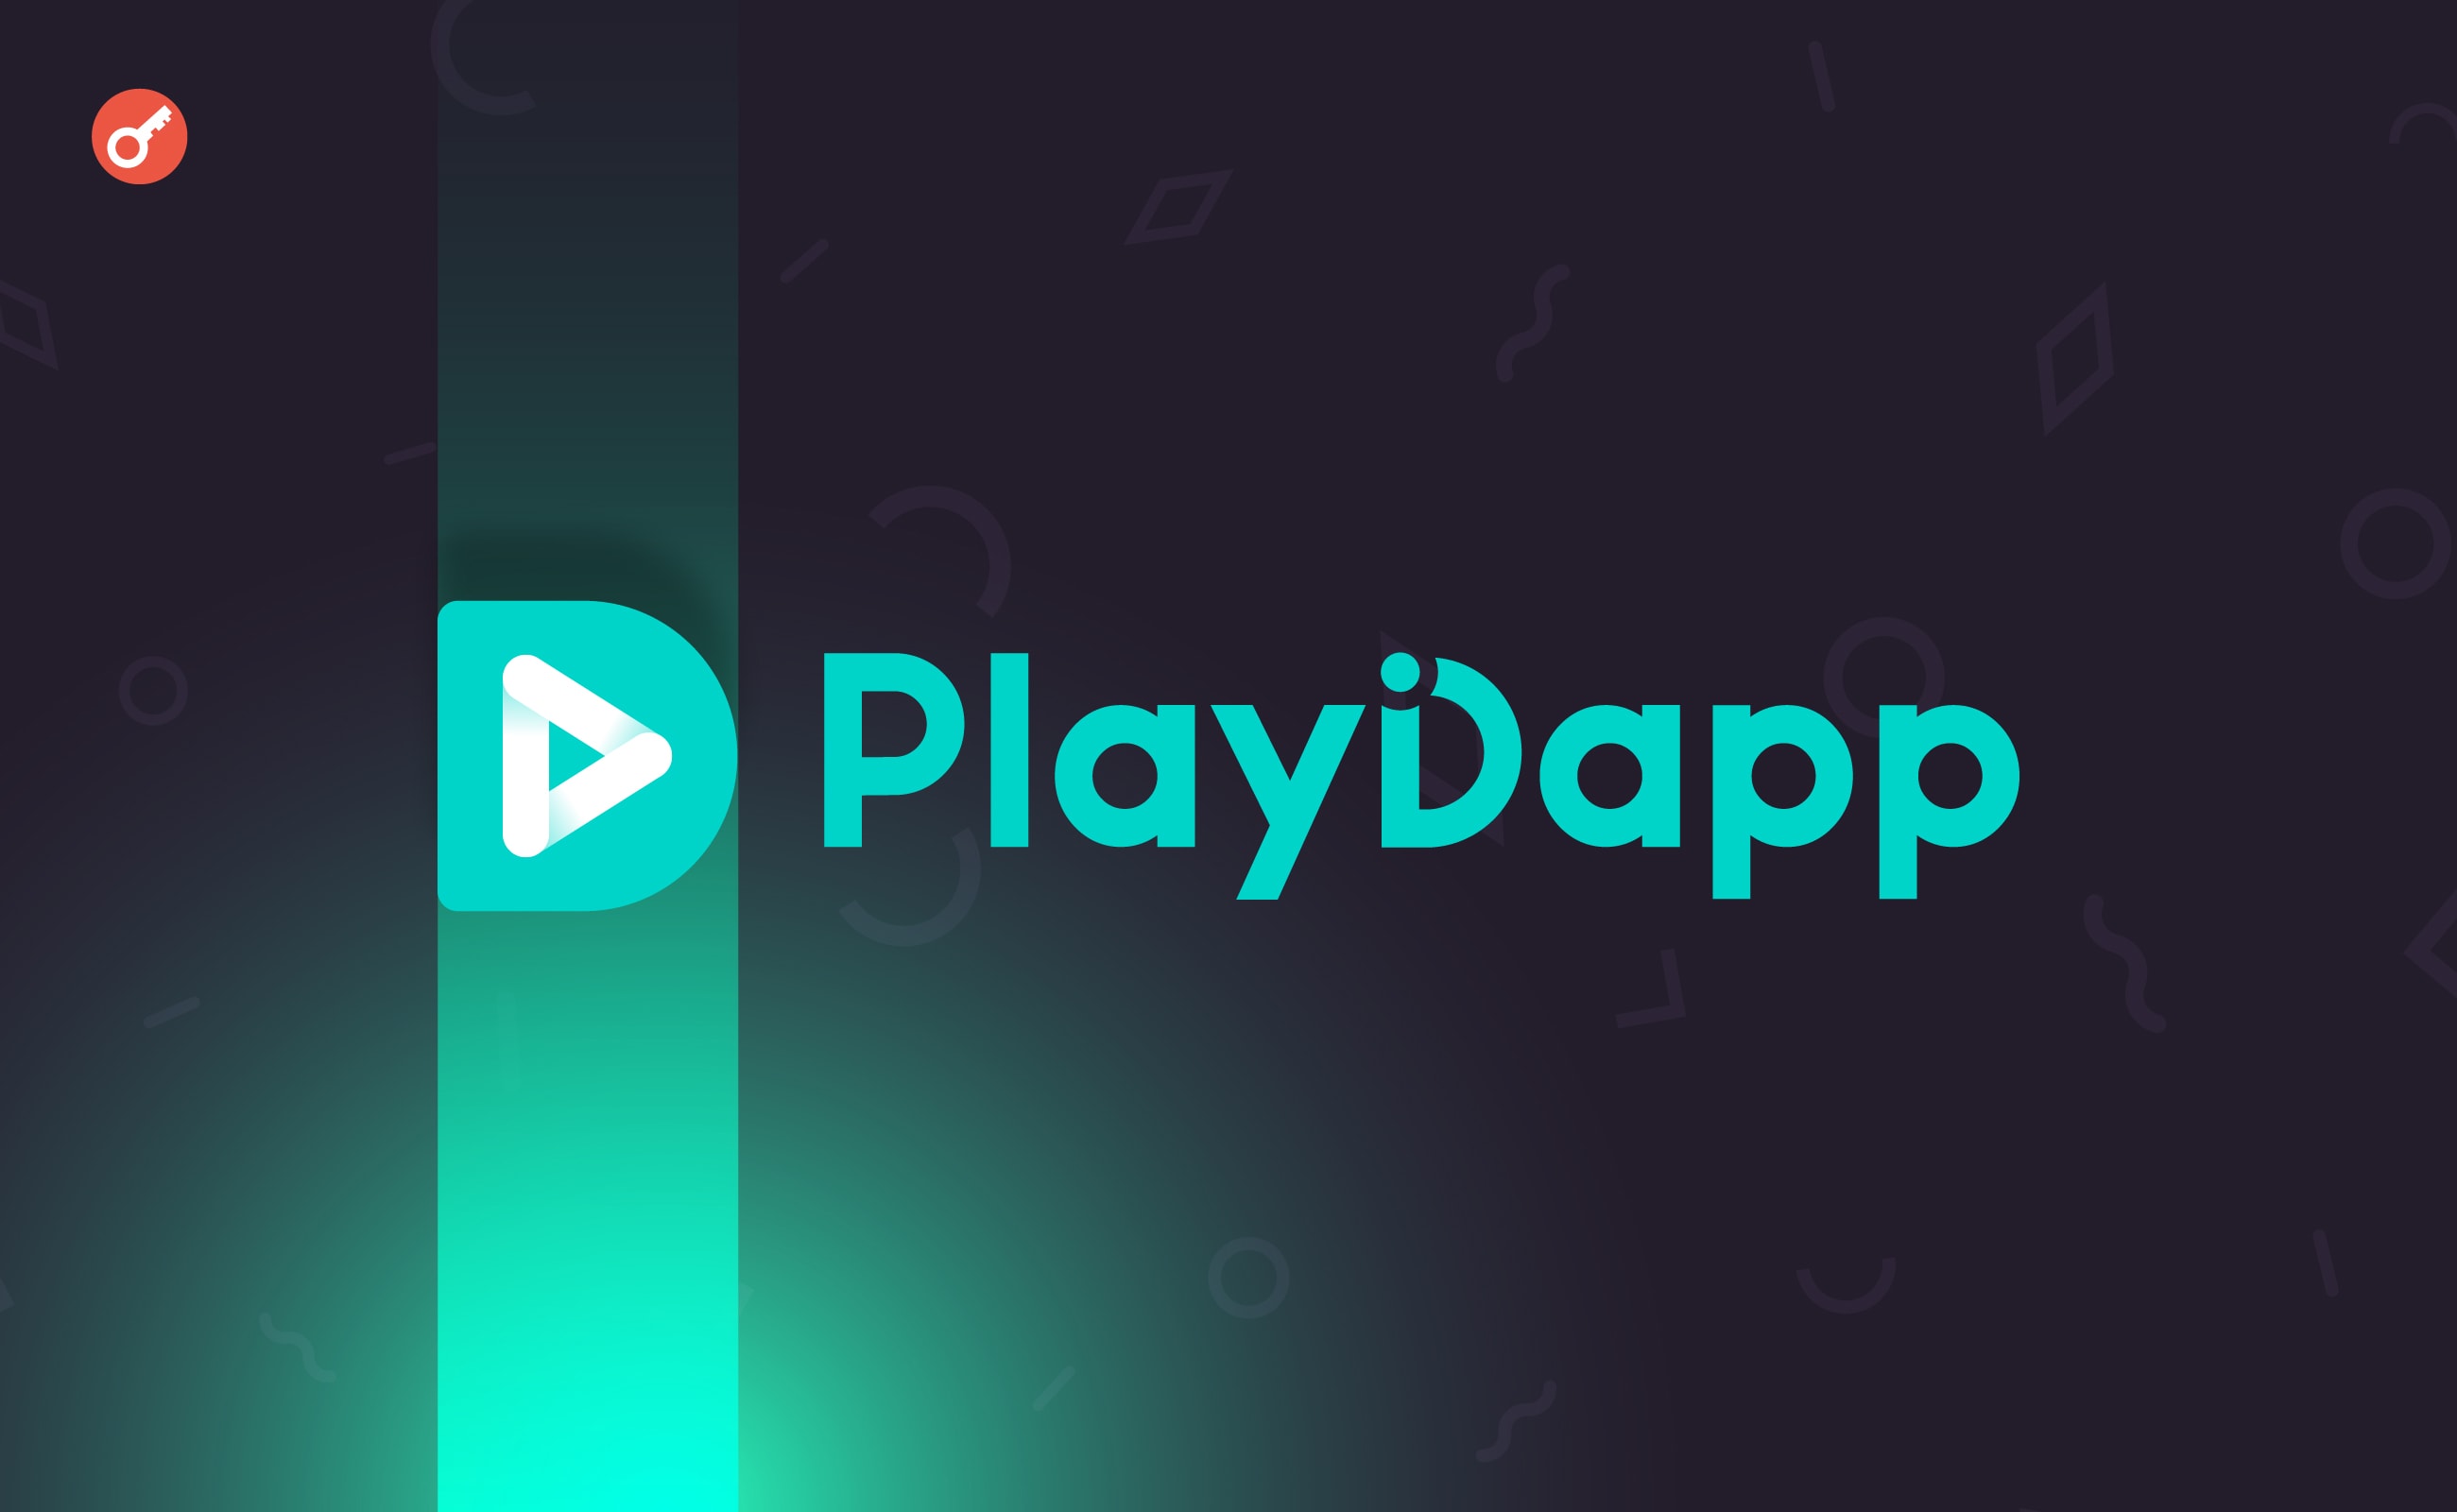 PlayDapp втратила у результаті двух експлойтів $290 млн. Головний колаж новини.